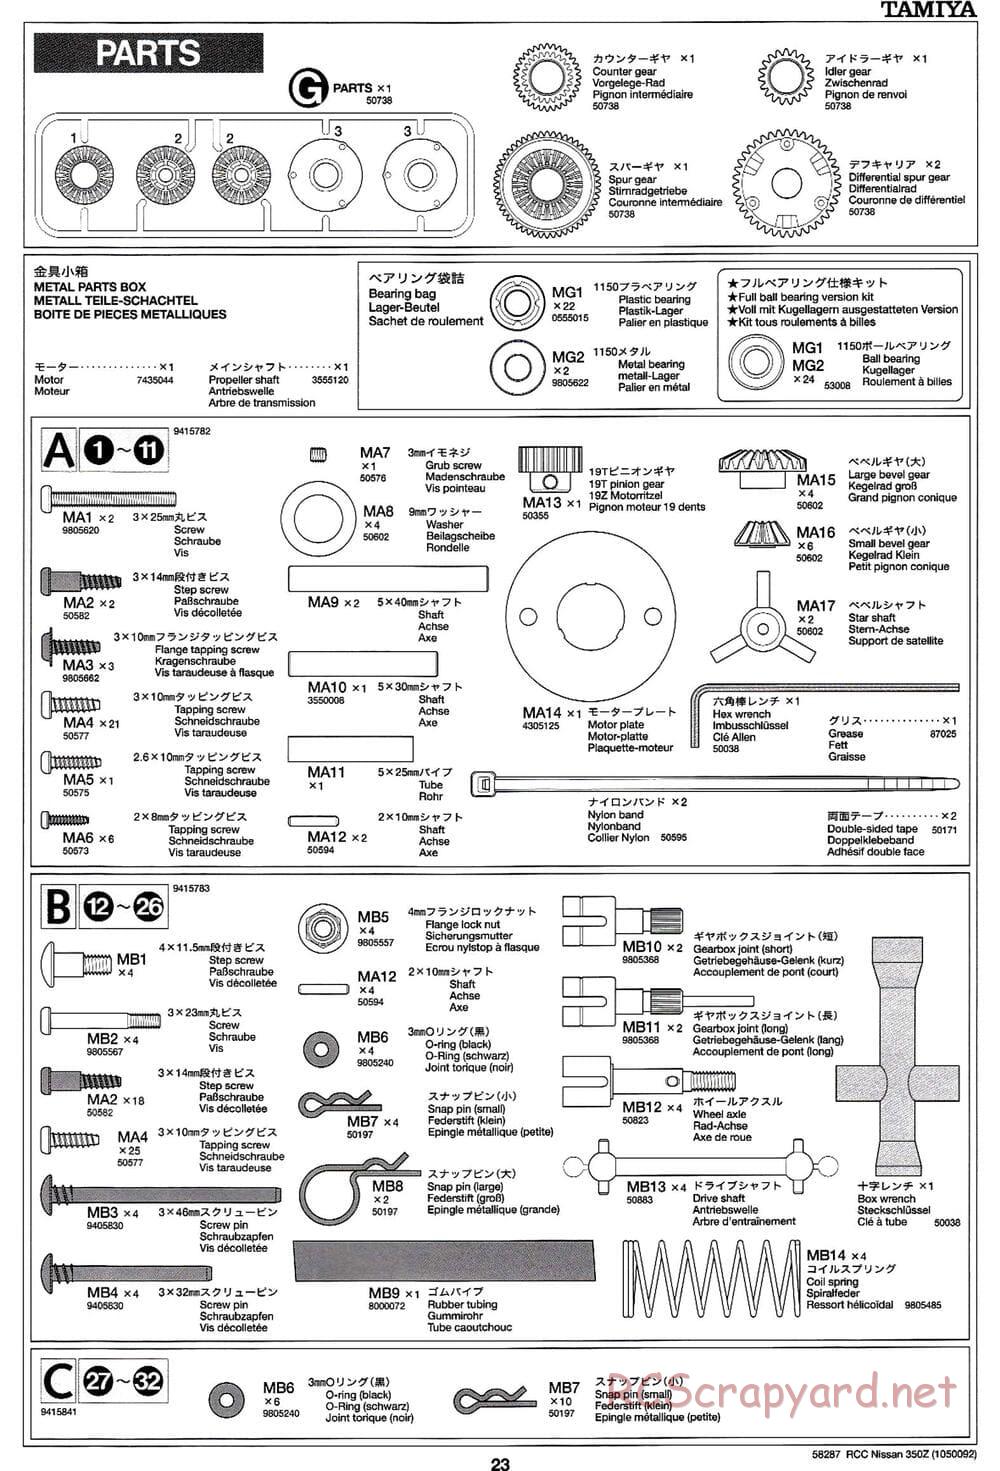 Tamiya - Nissan 350Z - TL-01 Chassis - Manual - Page 23